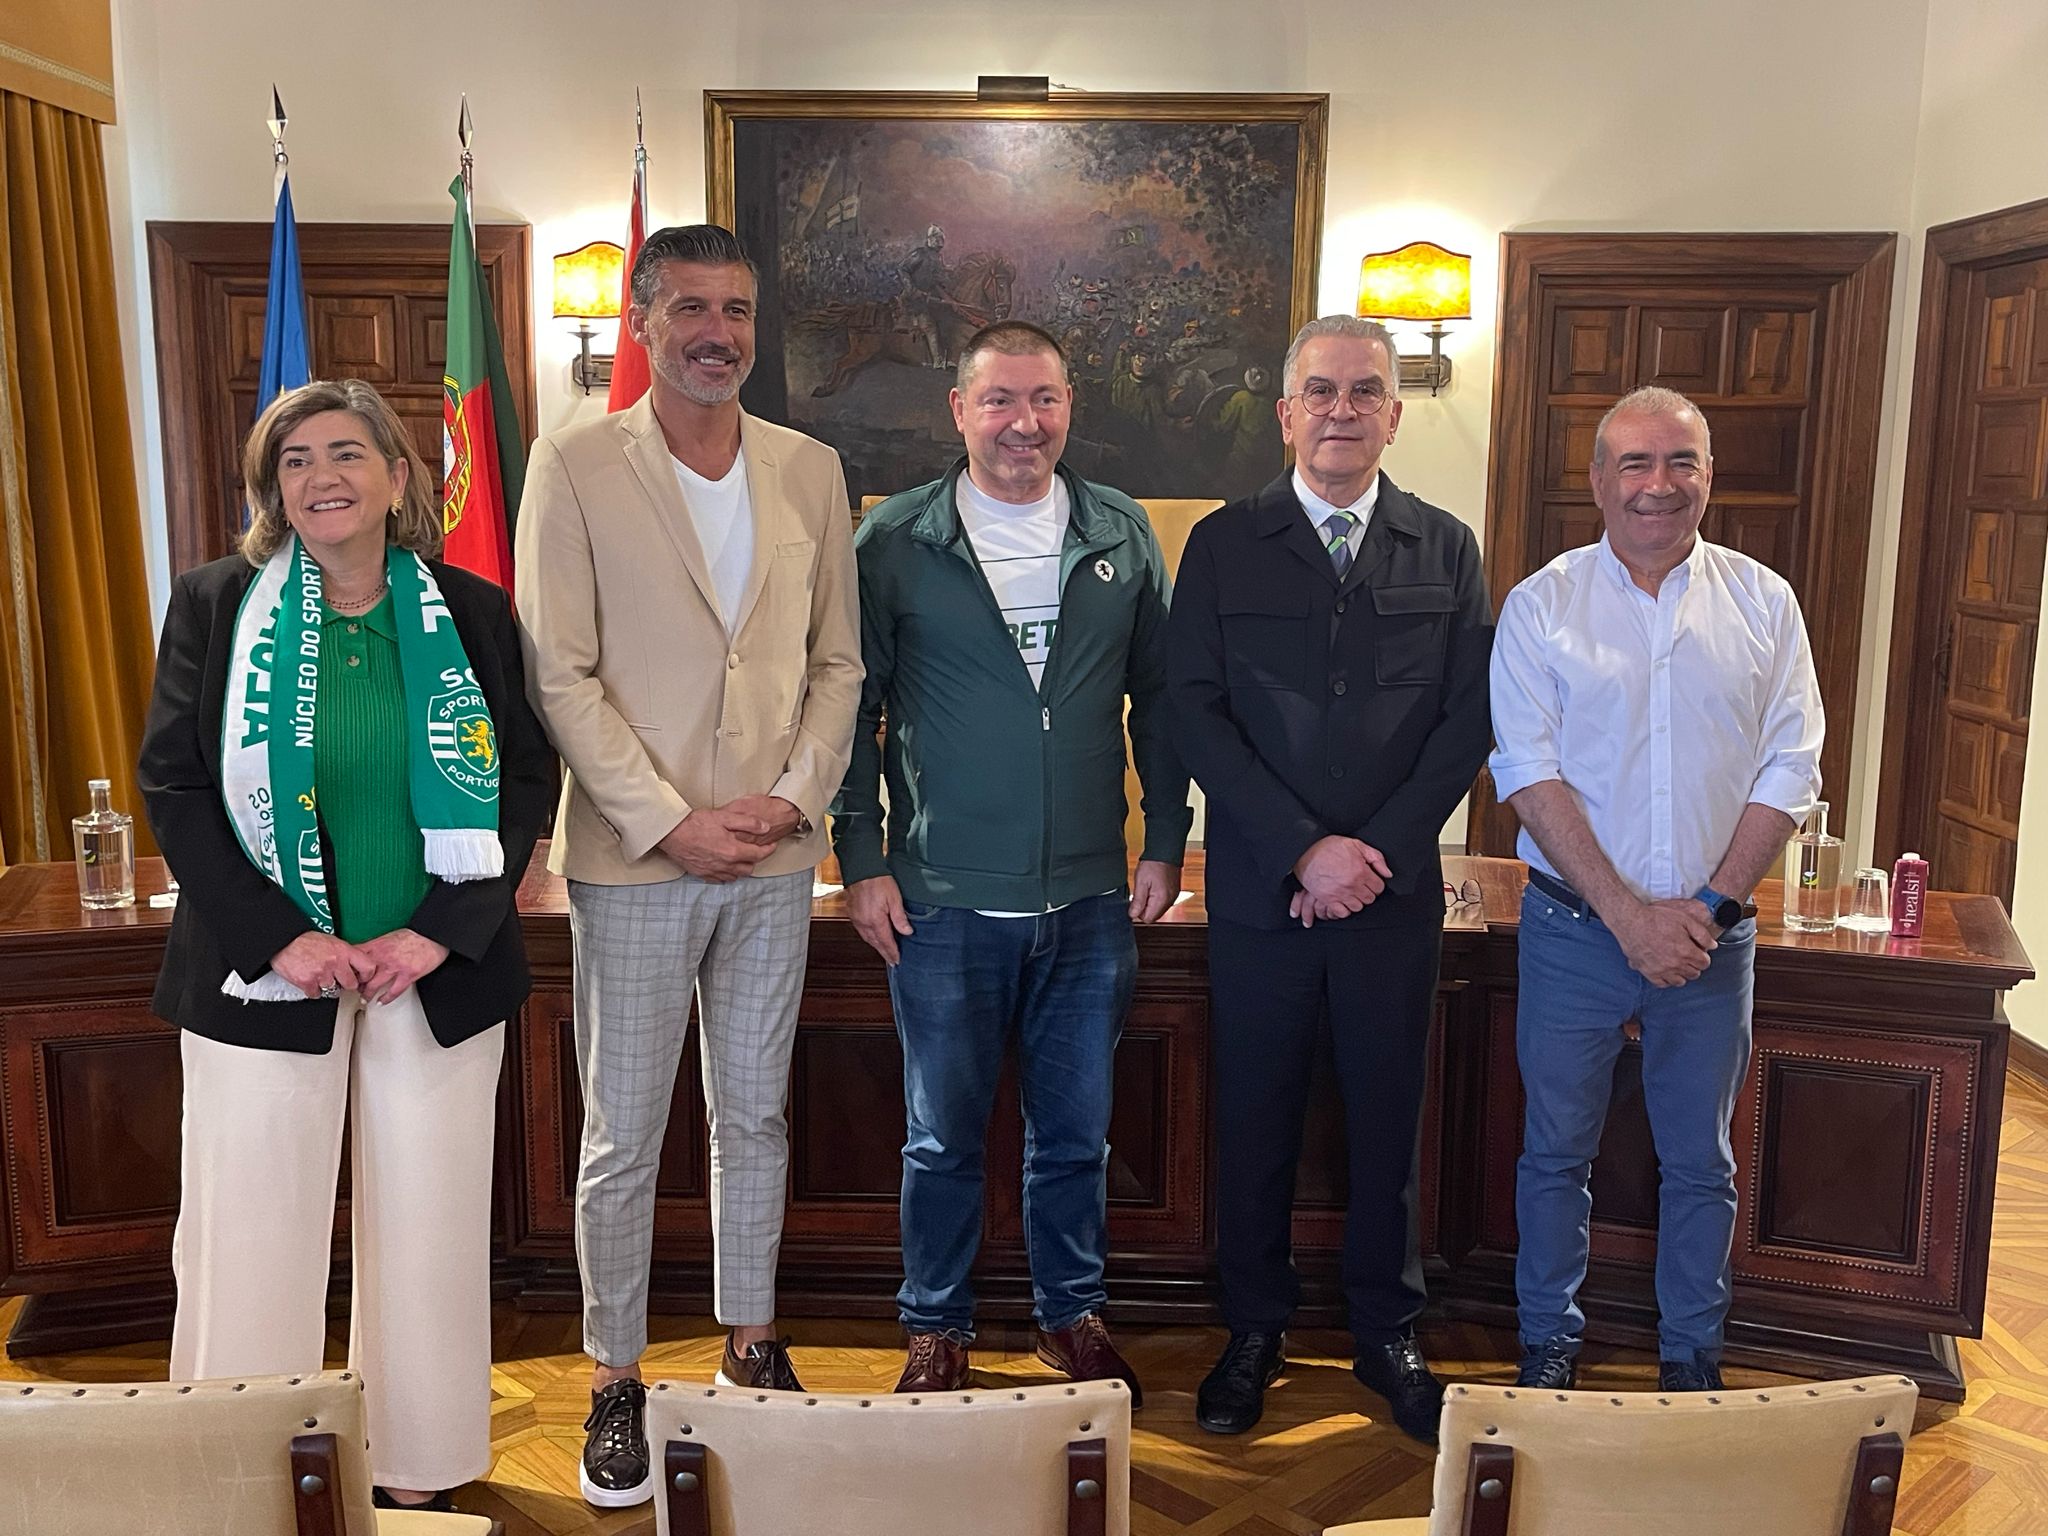 Executivo municipal recebeu Núcleo Sportinguista por ocasião do 30.º aniversário da coletividade